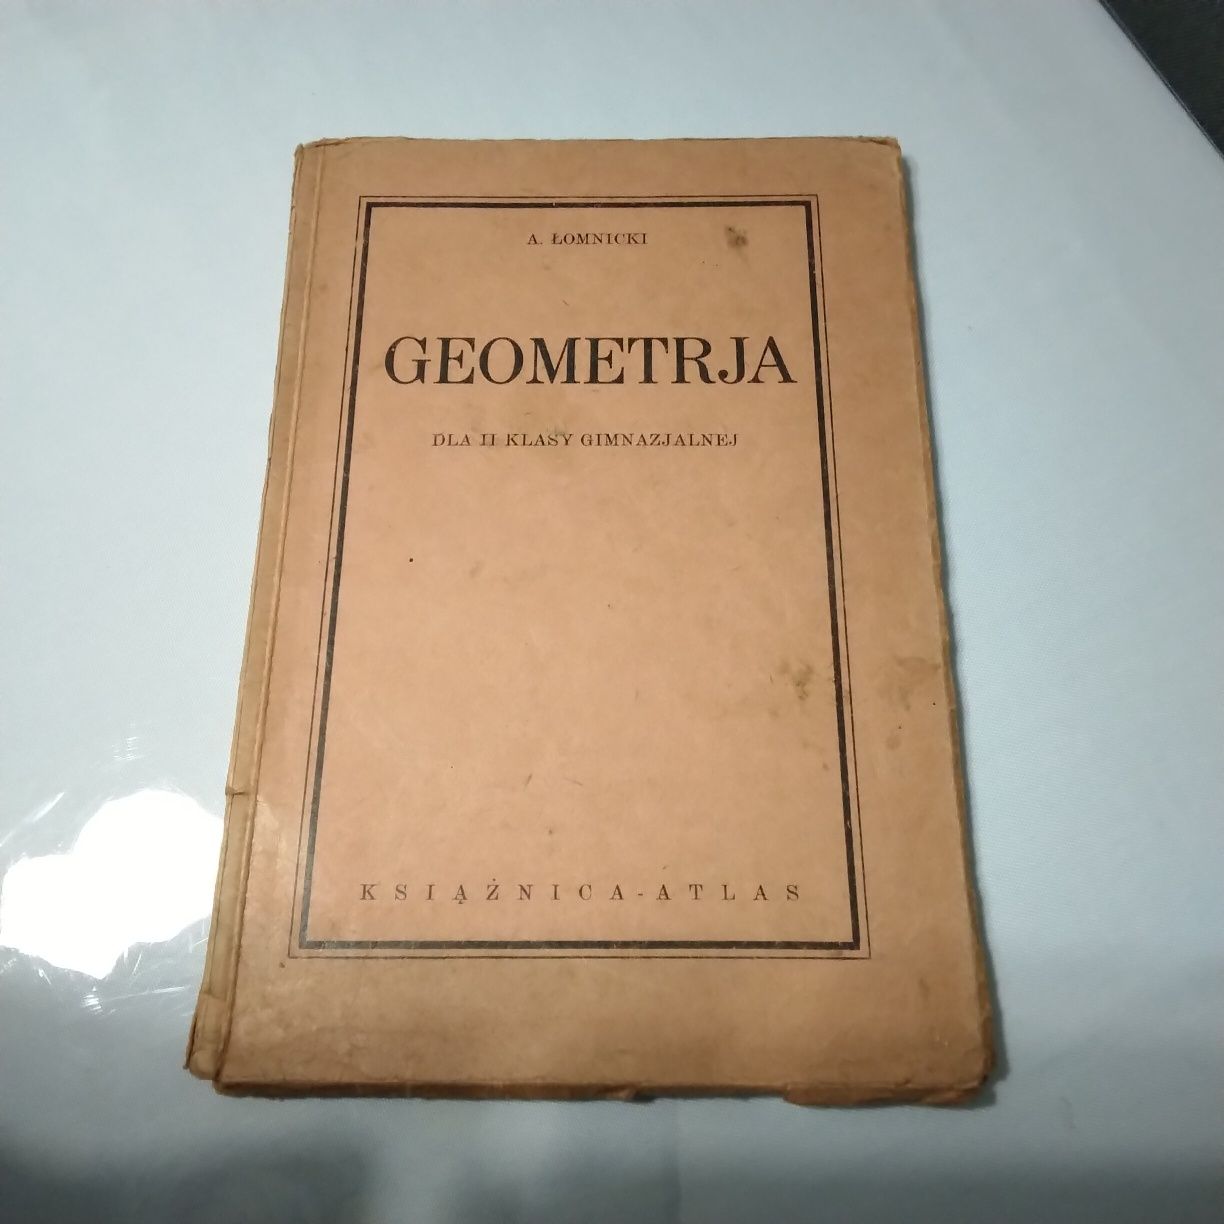 Книга на польській мові "Geometrja"